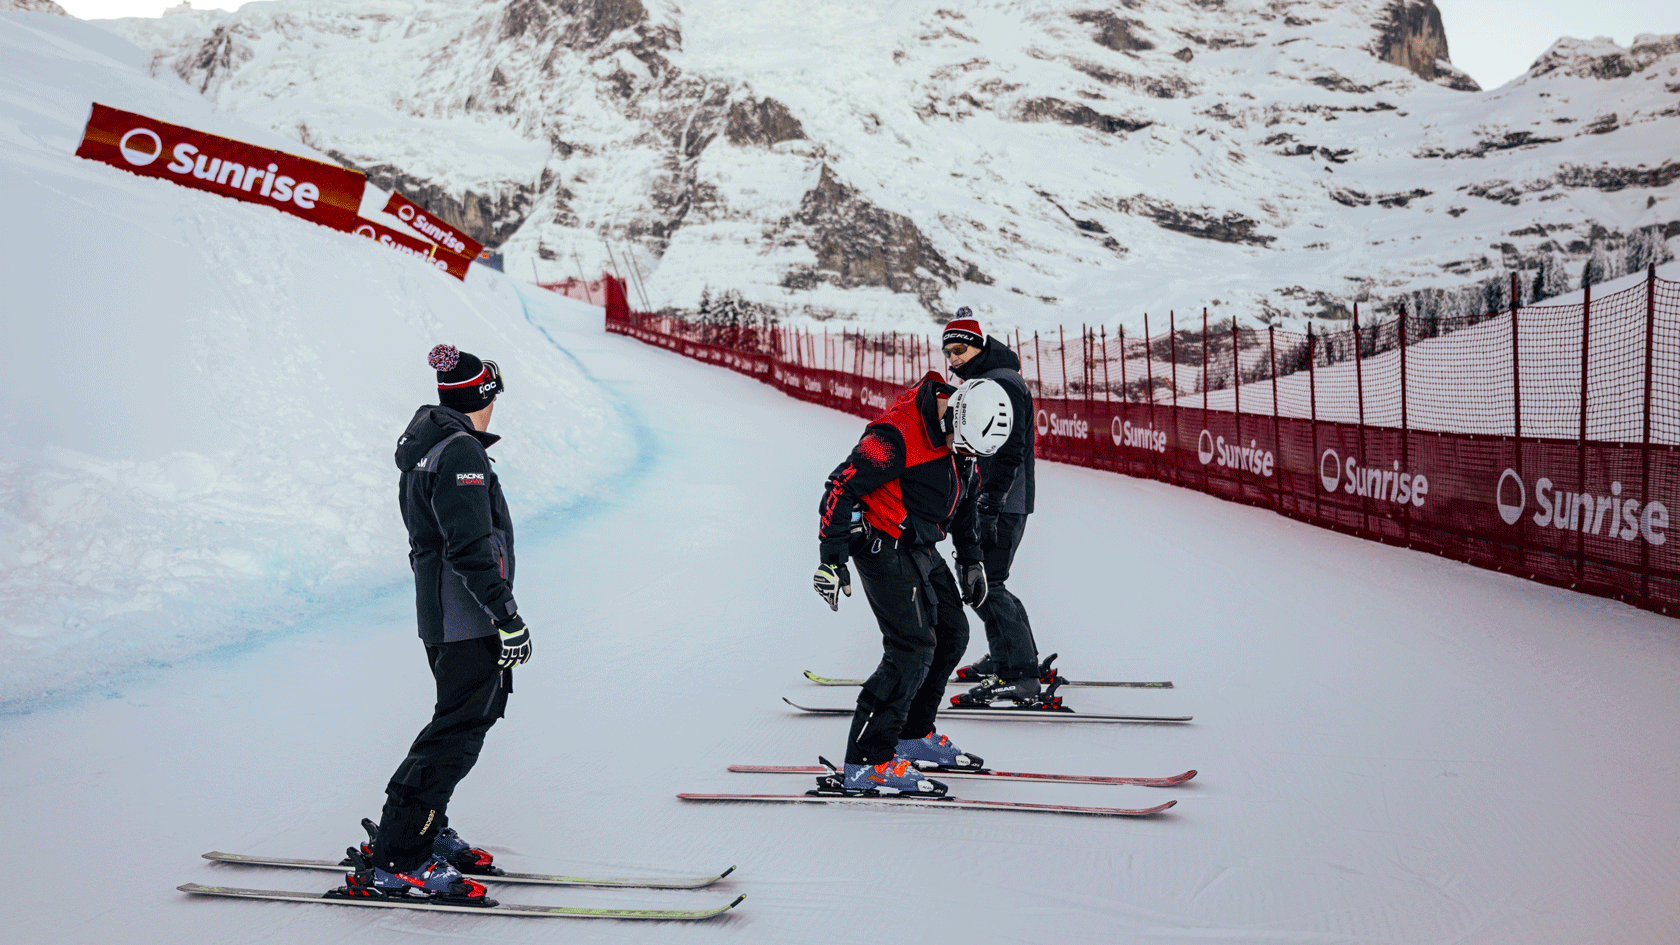 Comment est la neige aujourd’hui? La reconnaissance du parcours est aussi clé pour les servicemen. Photo: Swiss-Ski/ Stephan Bögli